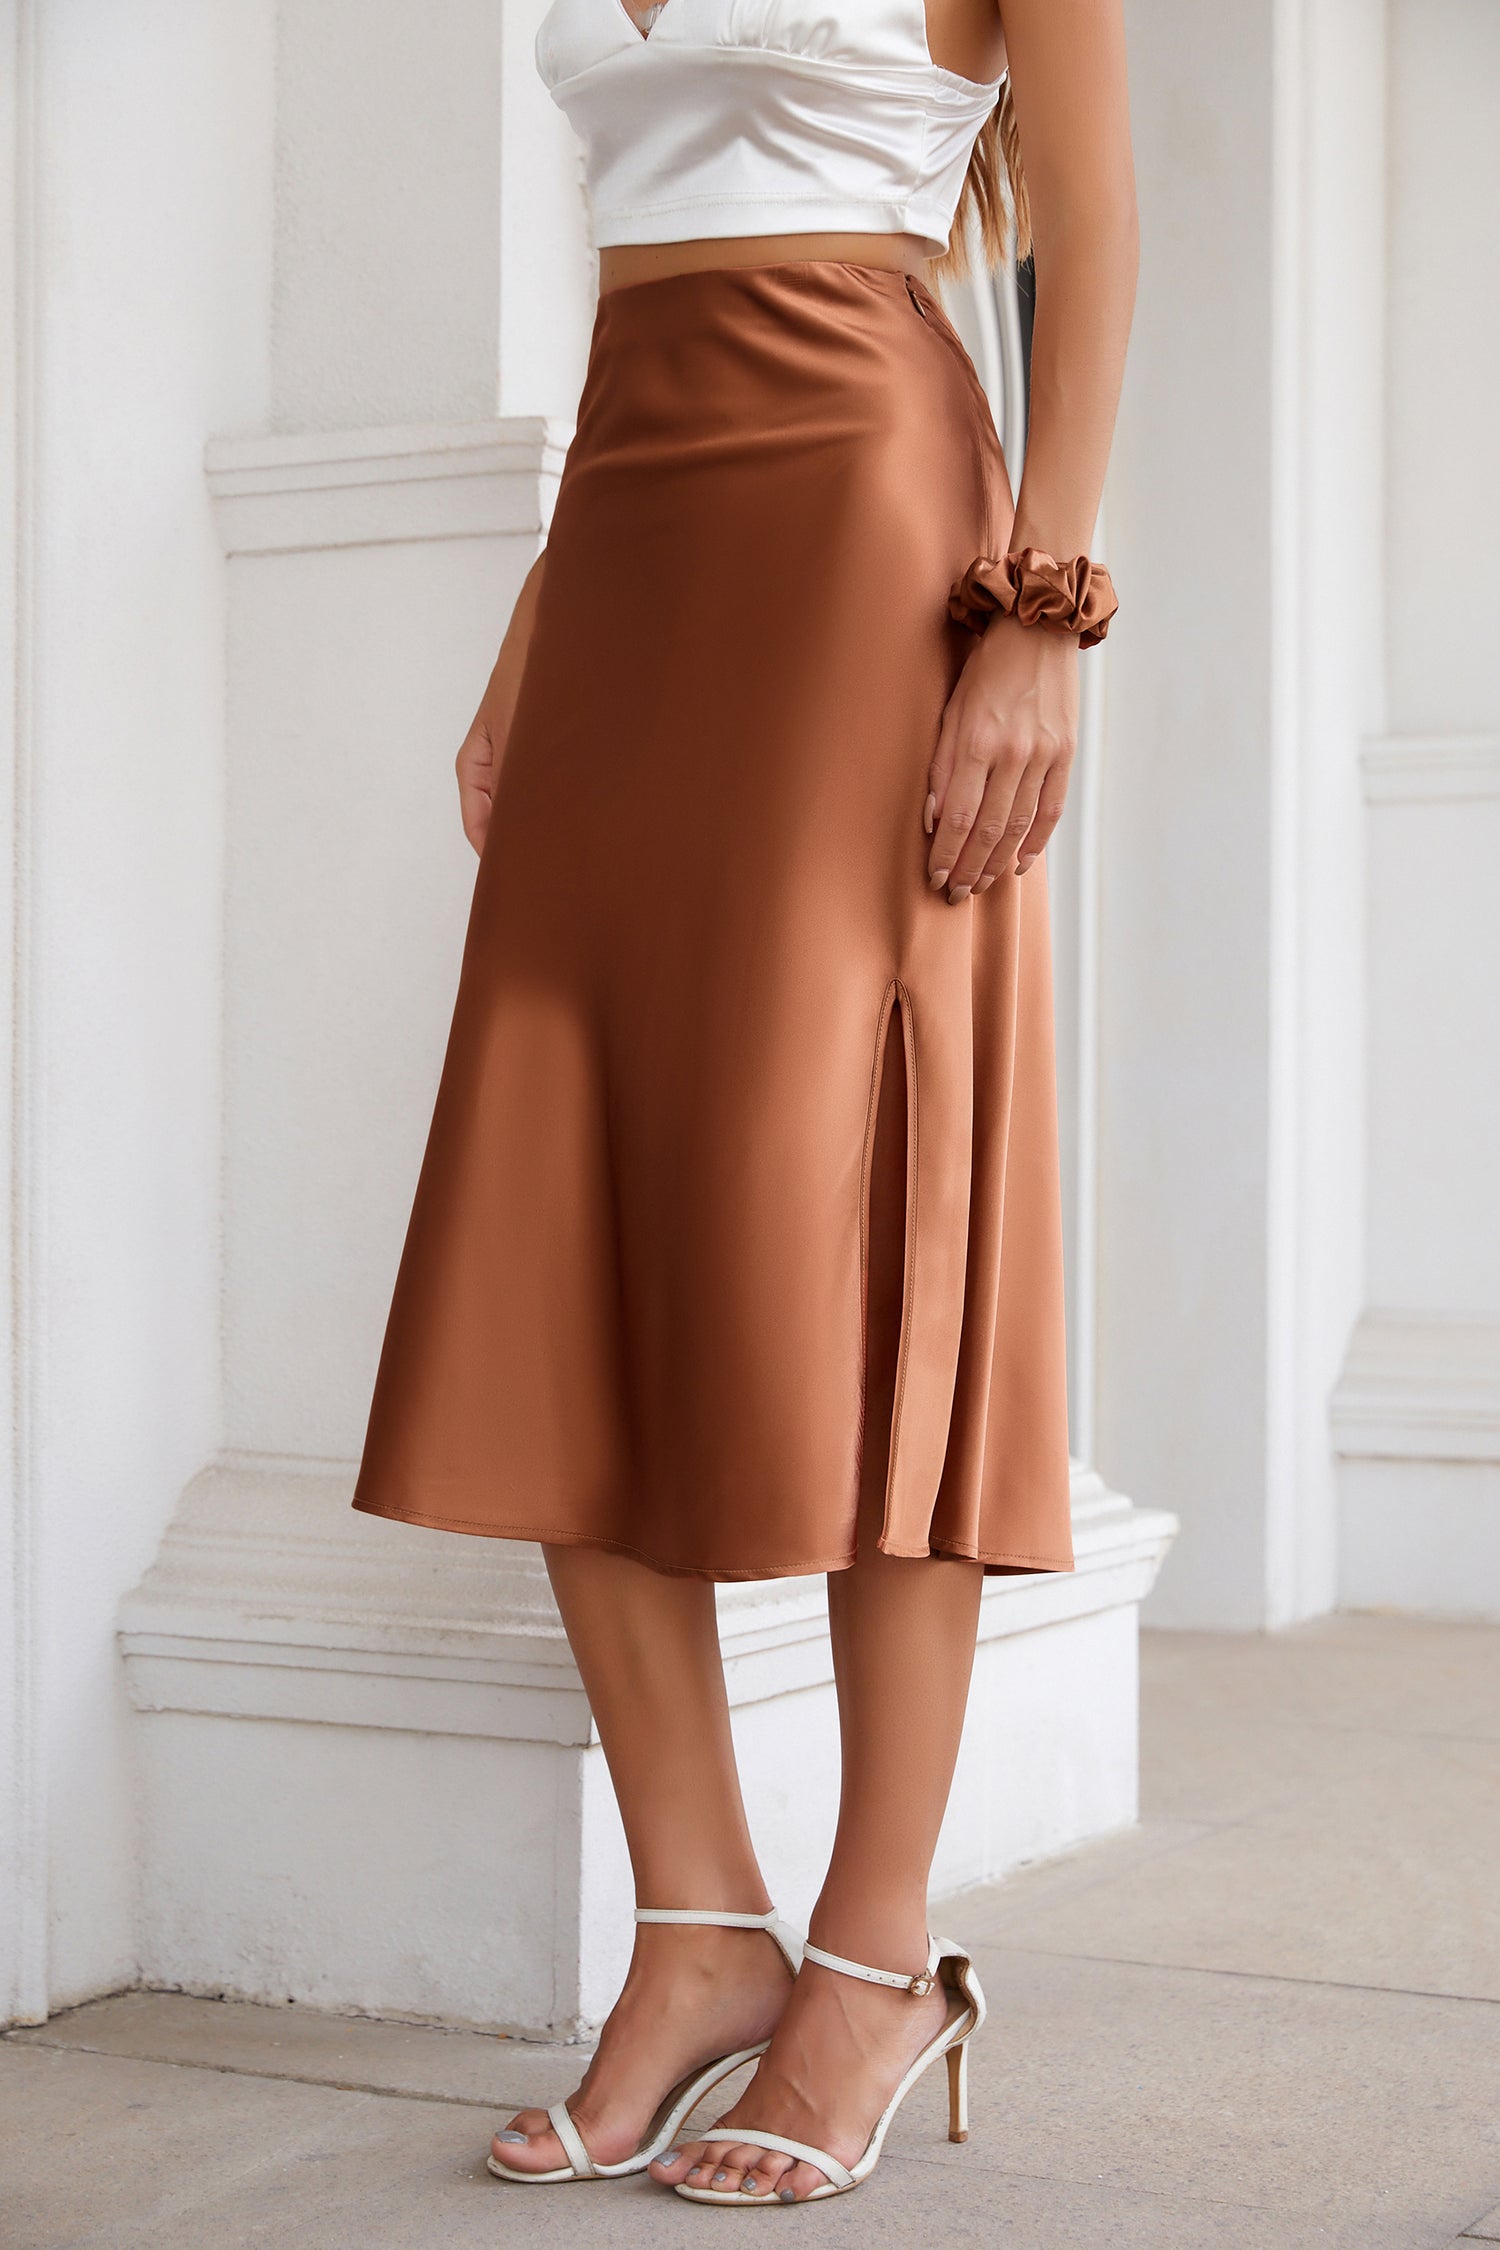 Silky Satin Midi Skirt with high Slit High Waist Caramel